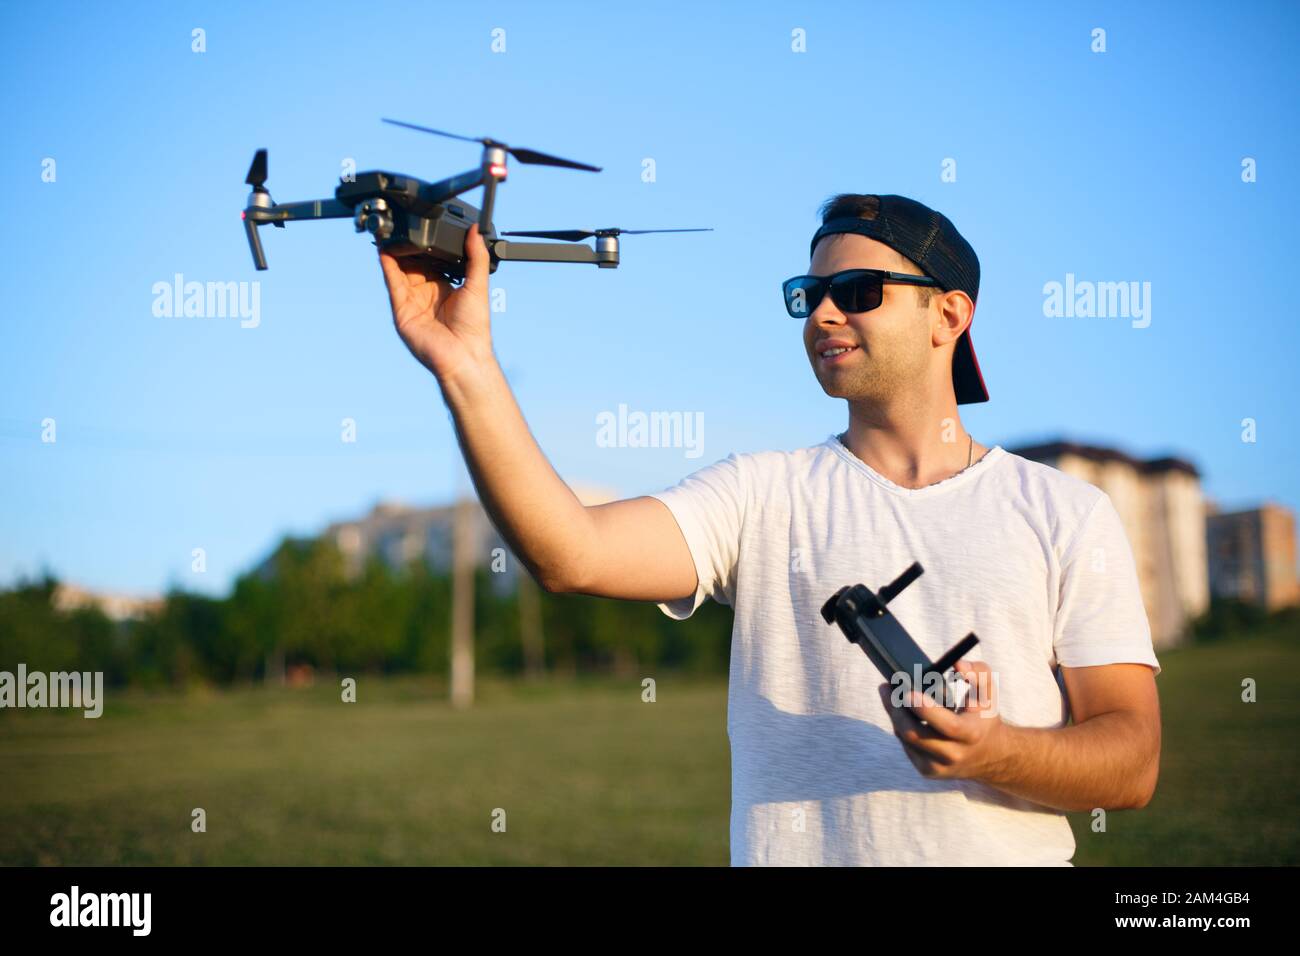 Ein fröhlicher lächelnder Mann hält kleine kompakte Drohne und Fernbedienung in den Händen. Pilot startet Quadcopter aus seiner Hand. Drohne bereit zum Start. Stockfoto